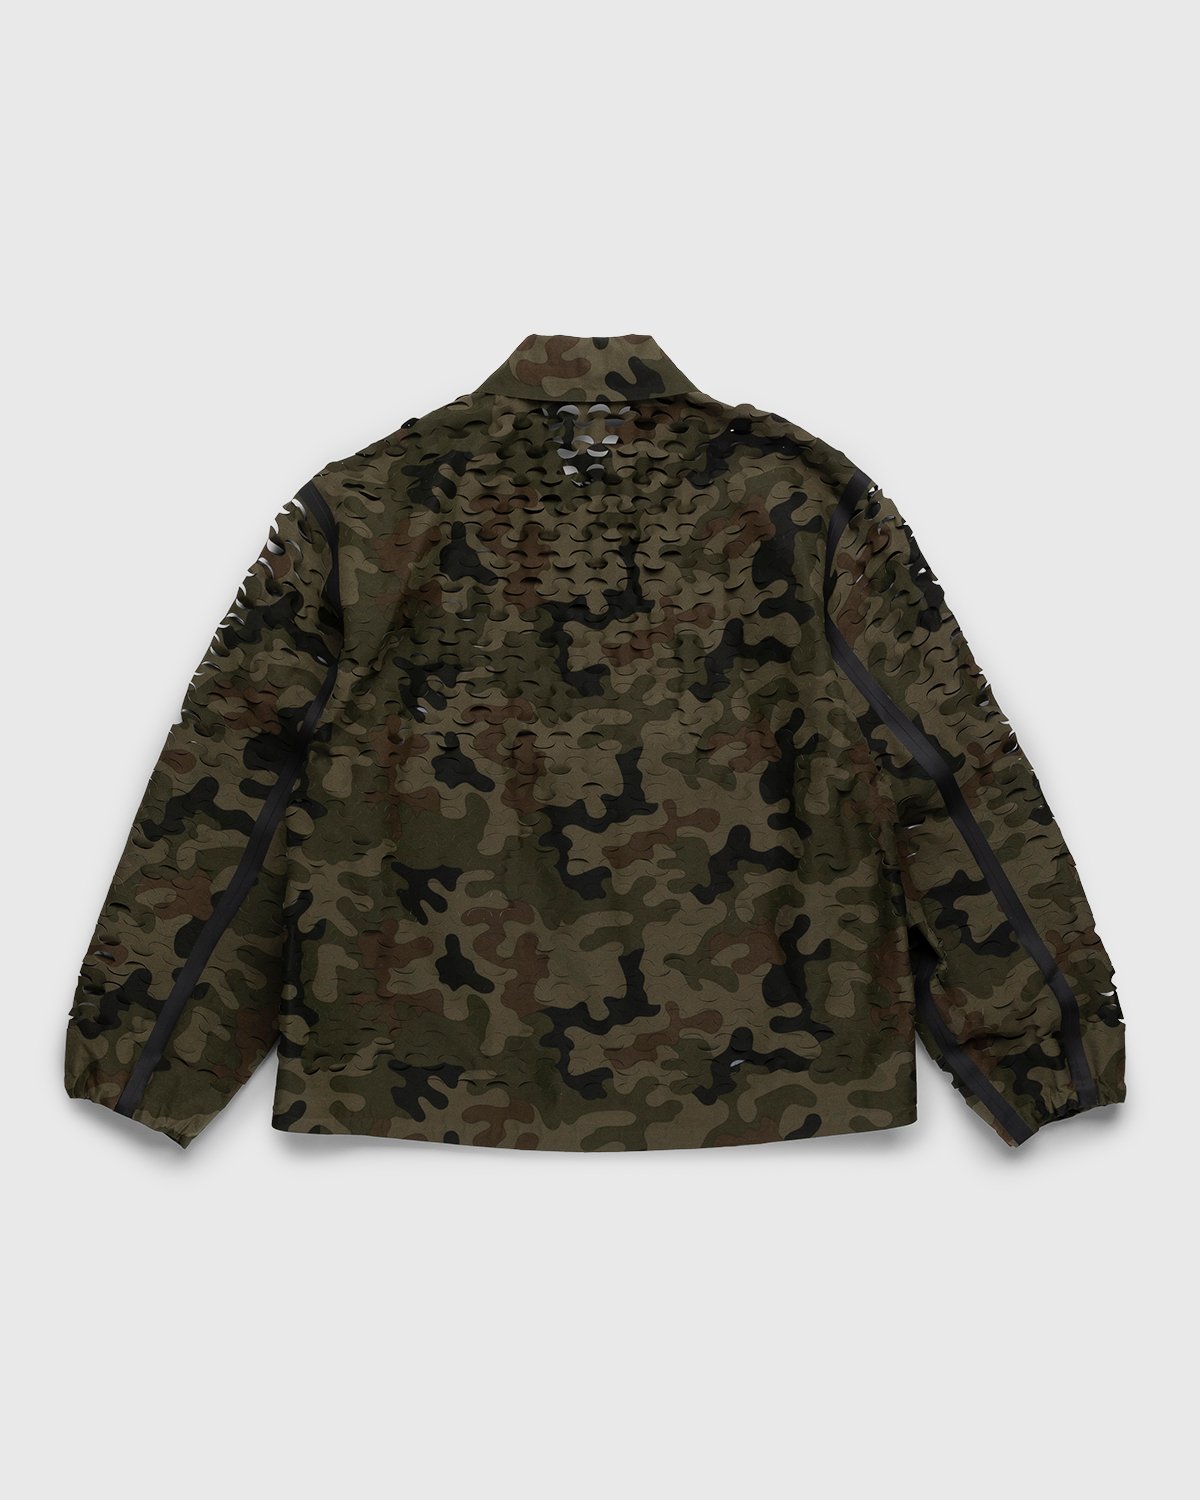 Dries van Noten – Voyde Laser Jacket Camouflage | Highsnobiety Shop